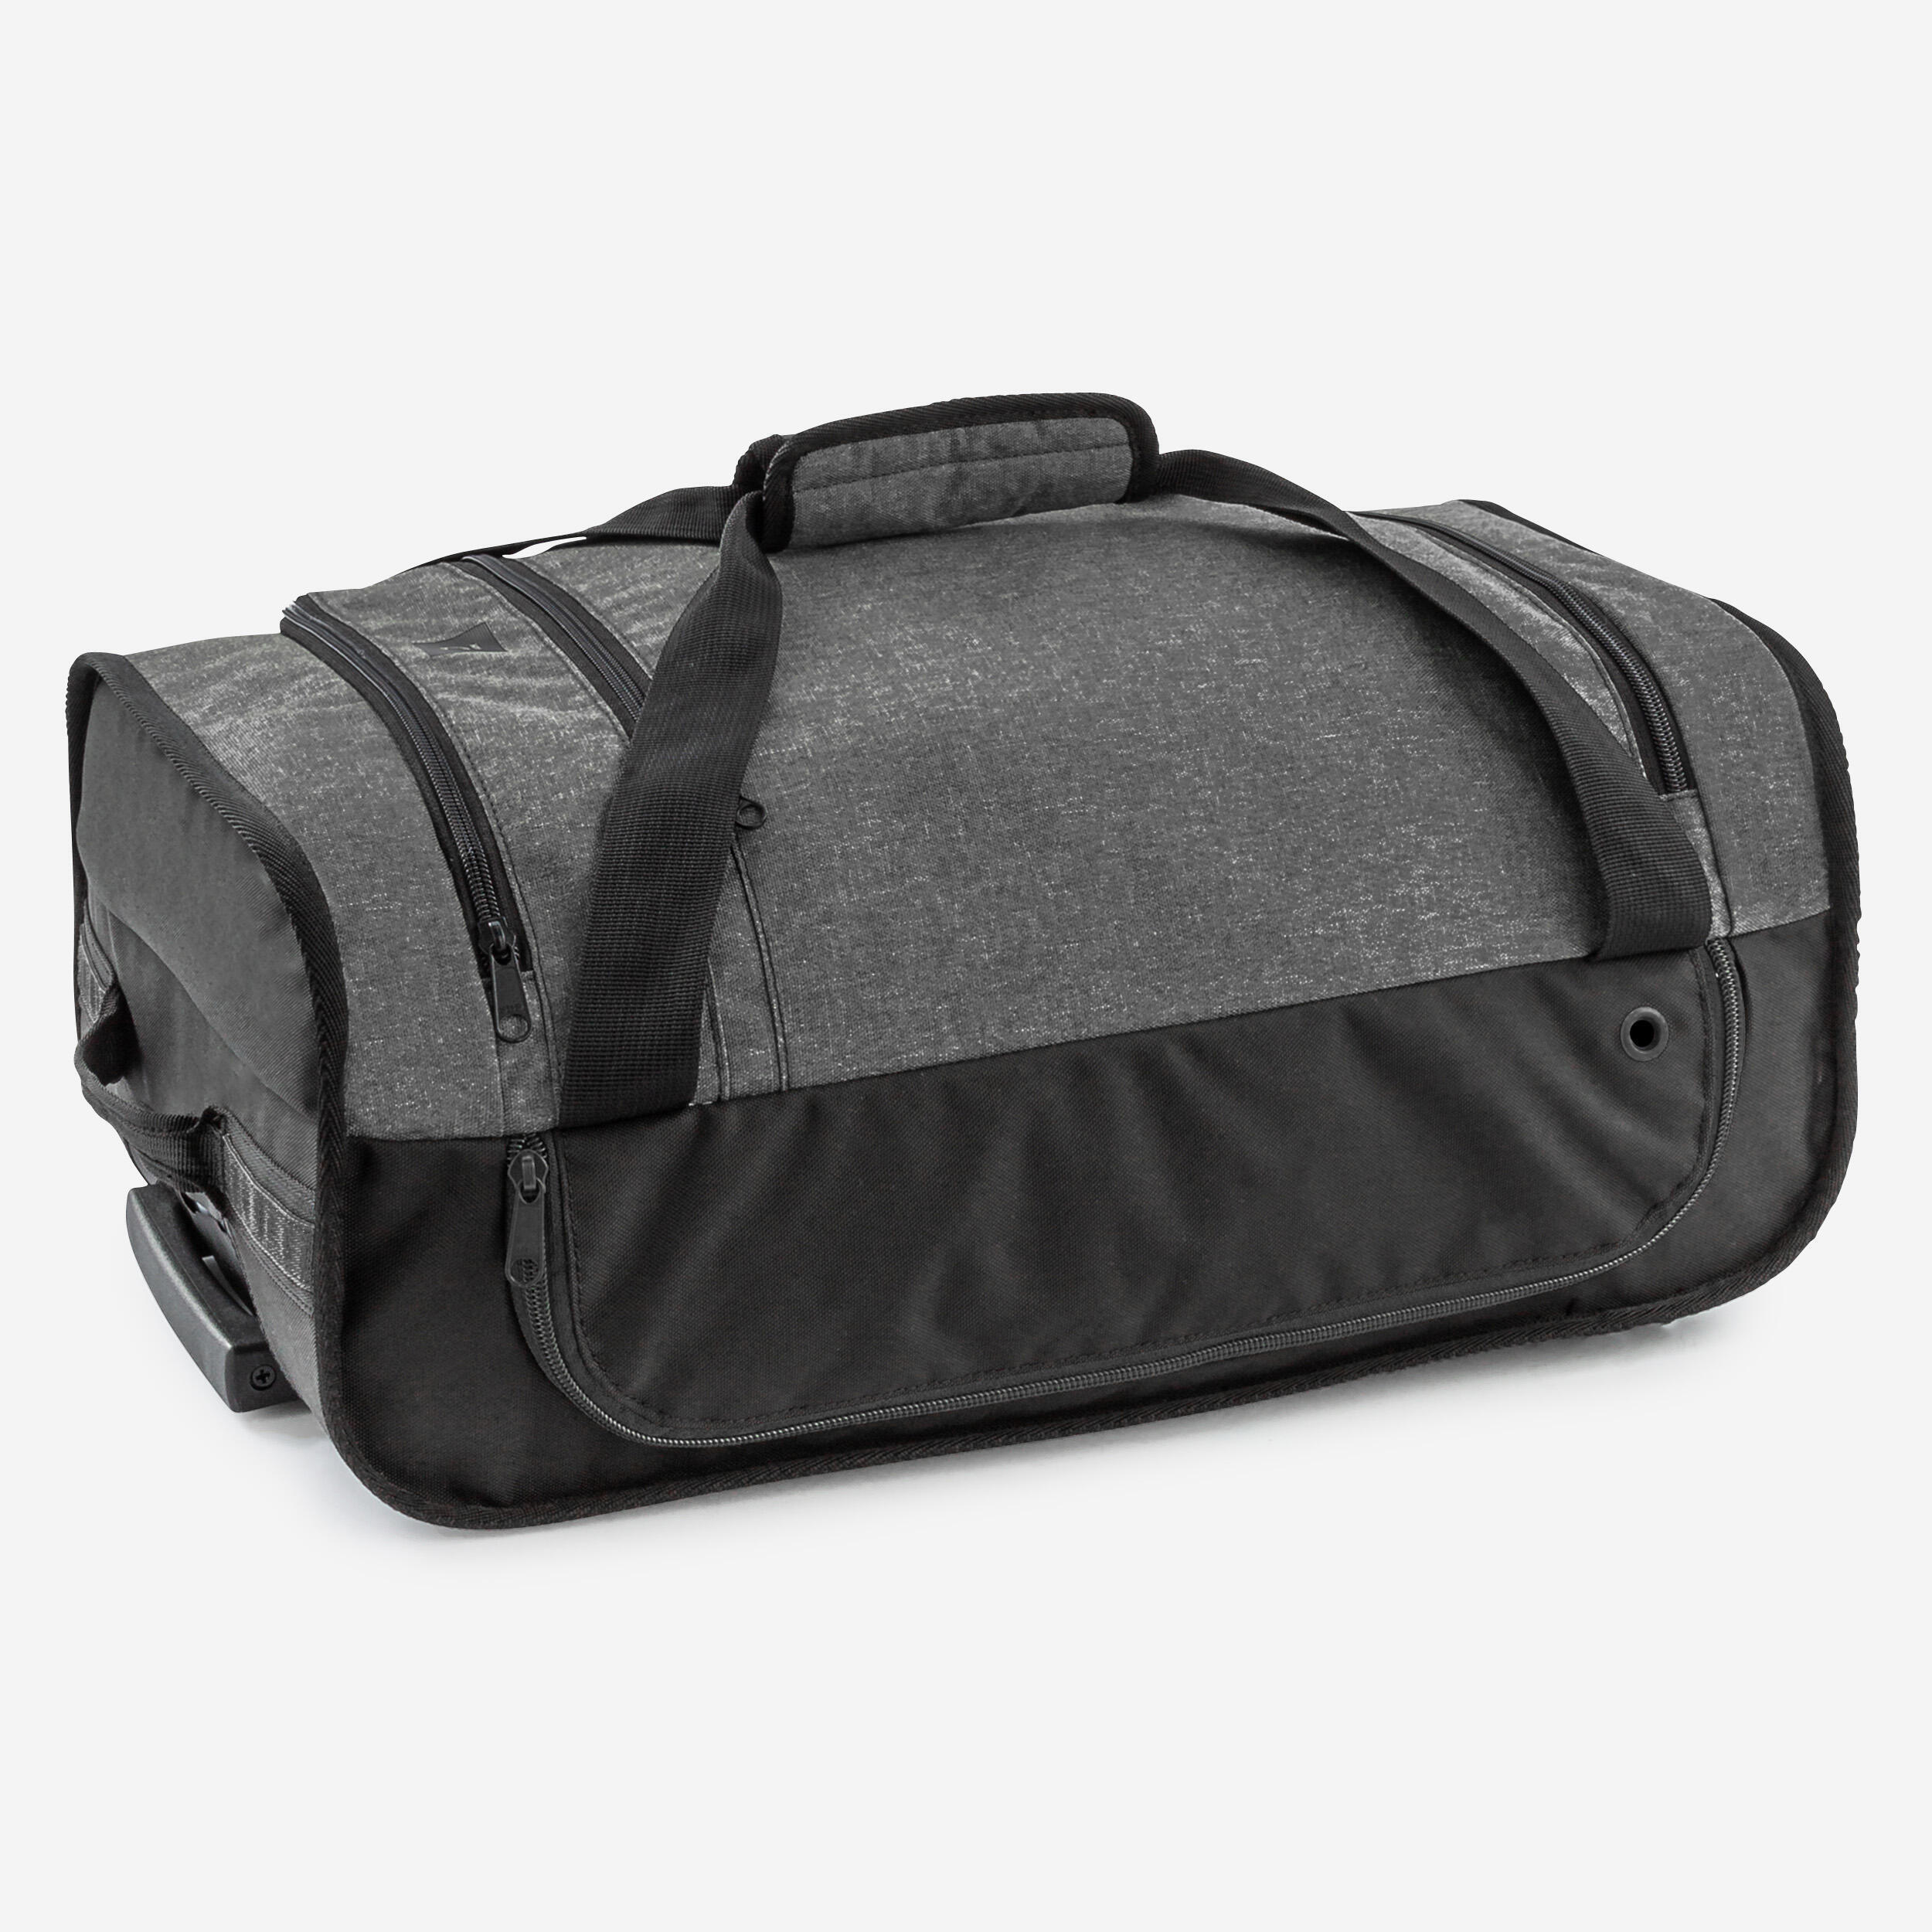 30L Suitcase Essential - Black/Grey 5/11